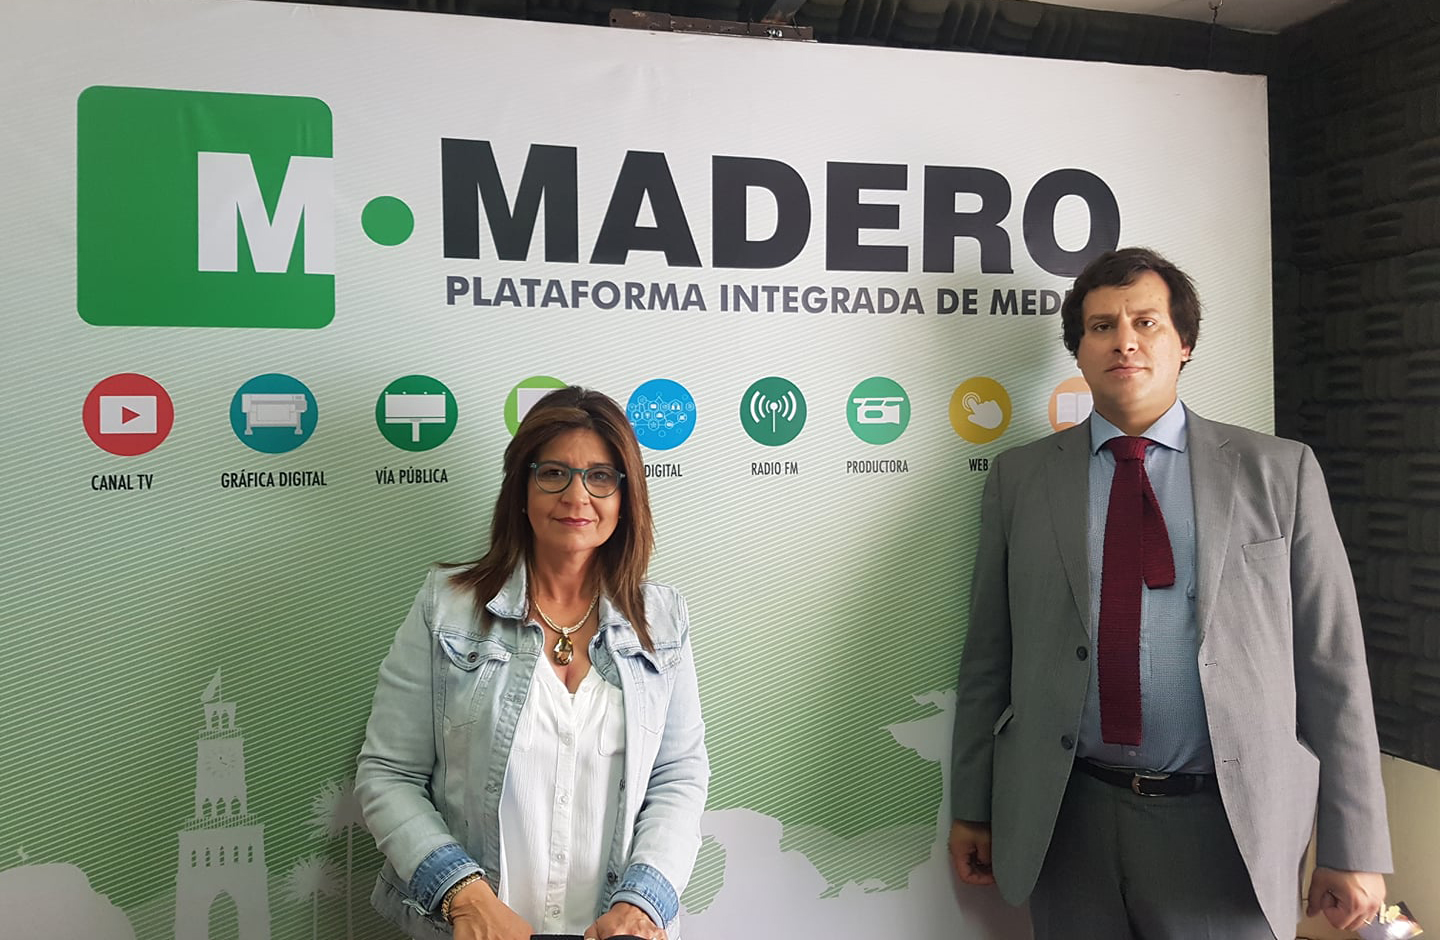 Abogado Convenio CAJTA - SENADIS Antofagasta participa en  Radio Madero